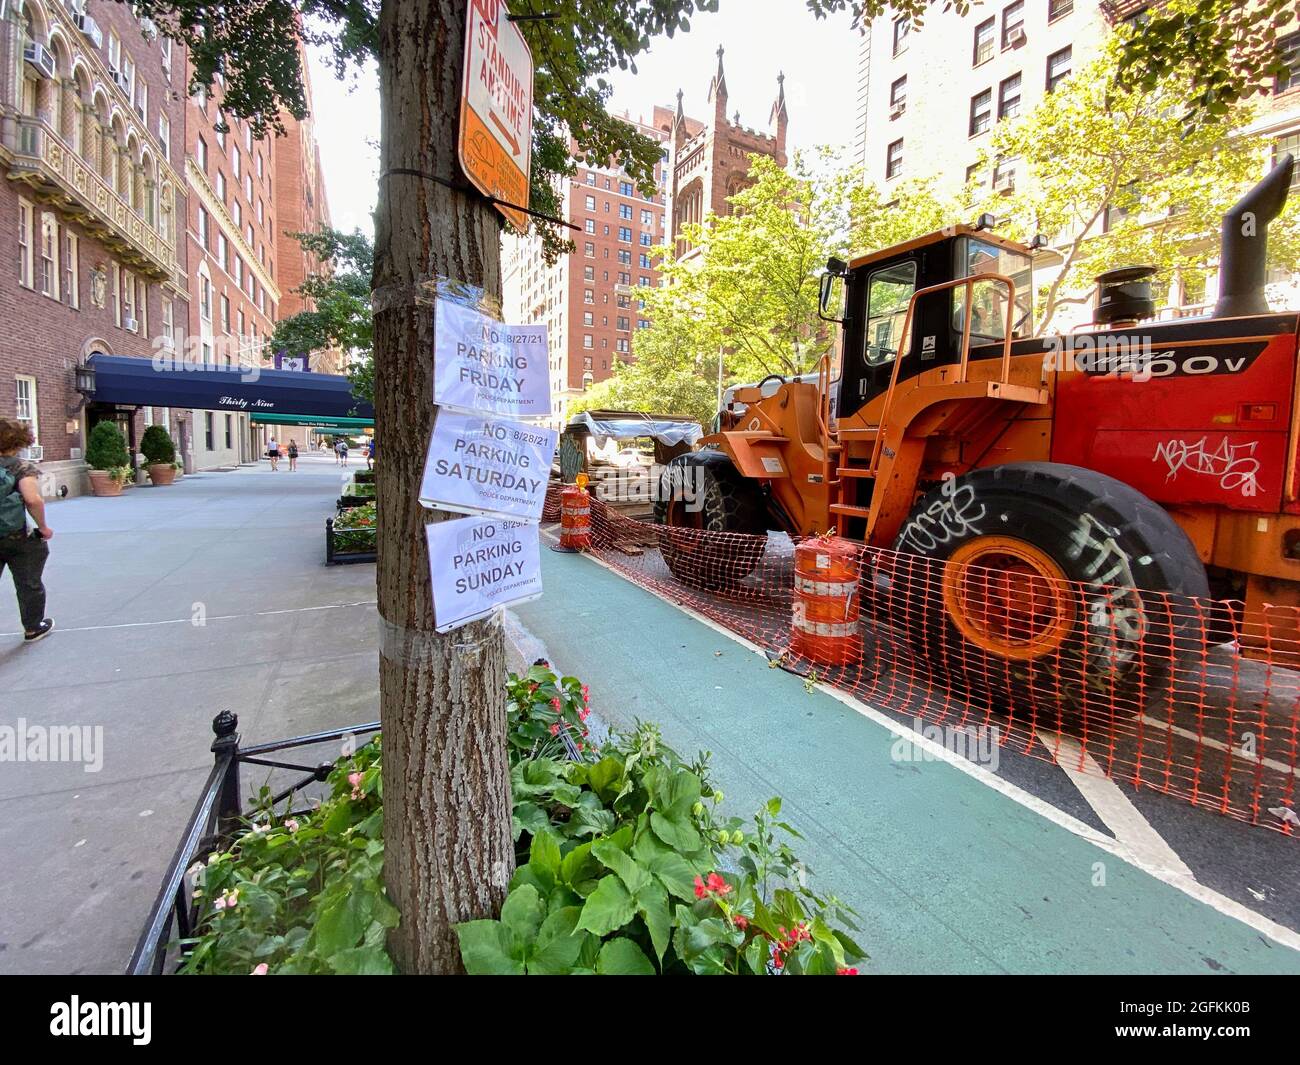 New York, NY, USA - 25. Aug 2021: Keine Parkschilder neben der Fahrradspur, die sich neben schweren Straßenbaugeräten und -Zubehör befindet Stockfoto